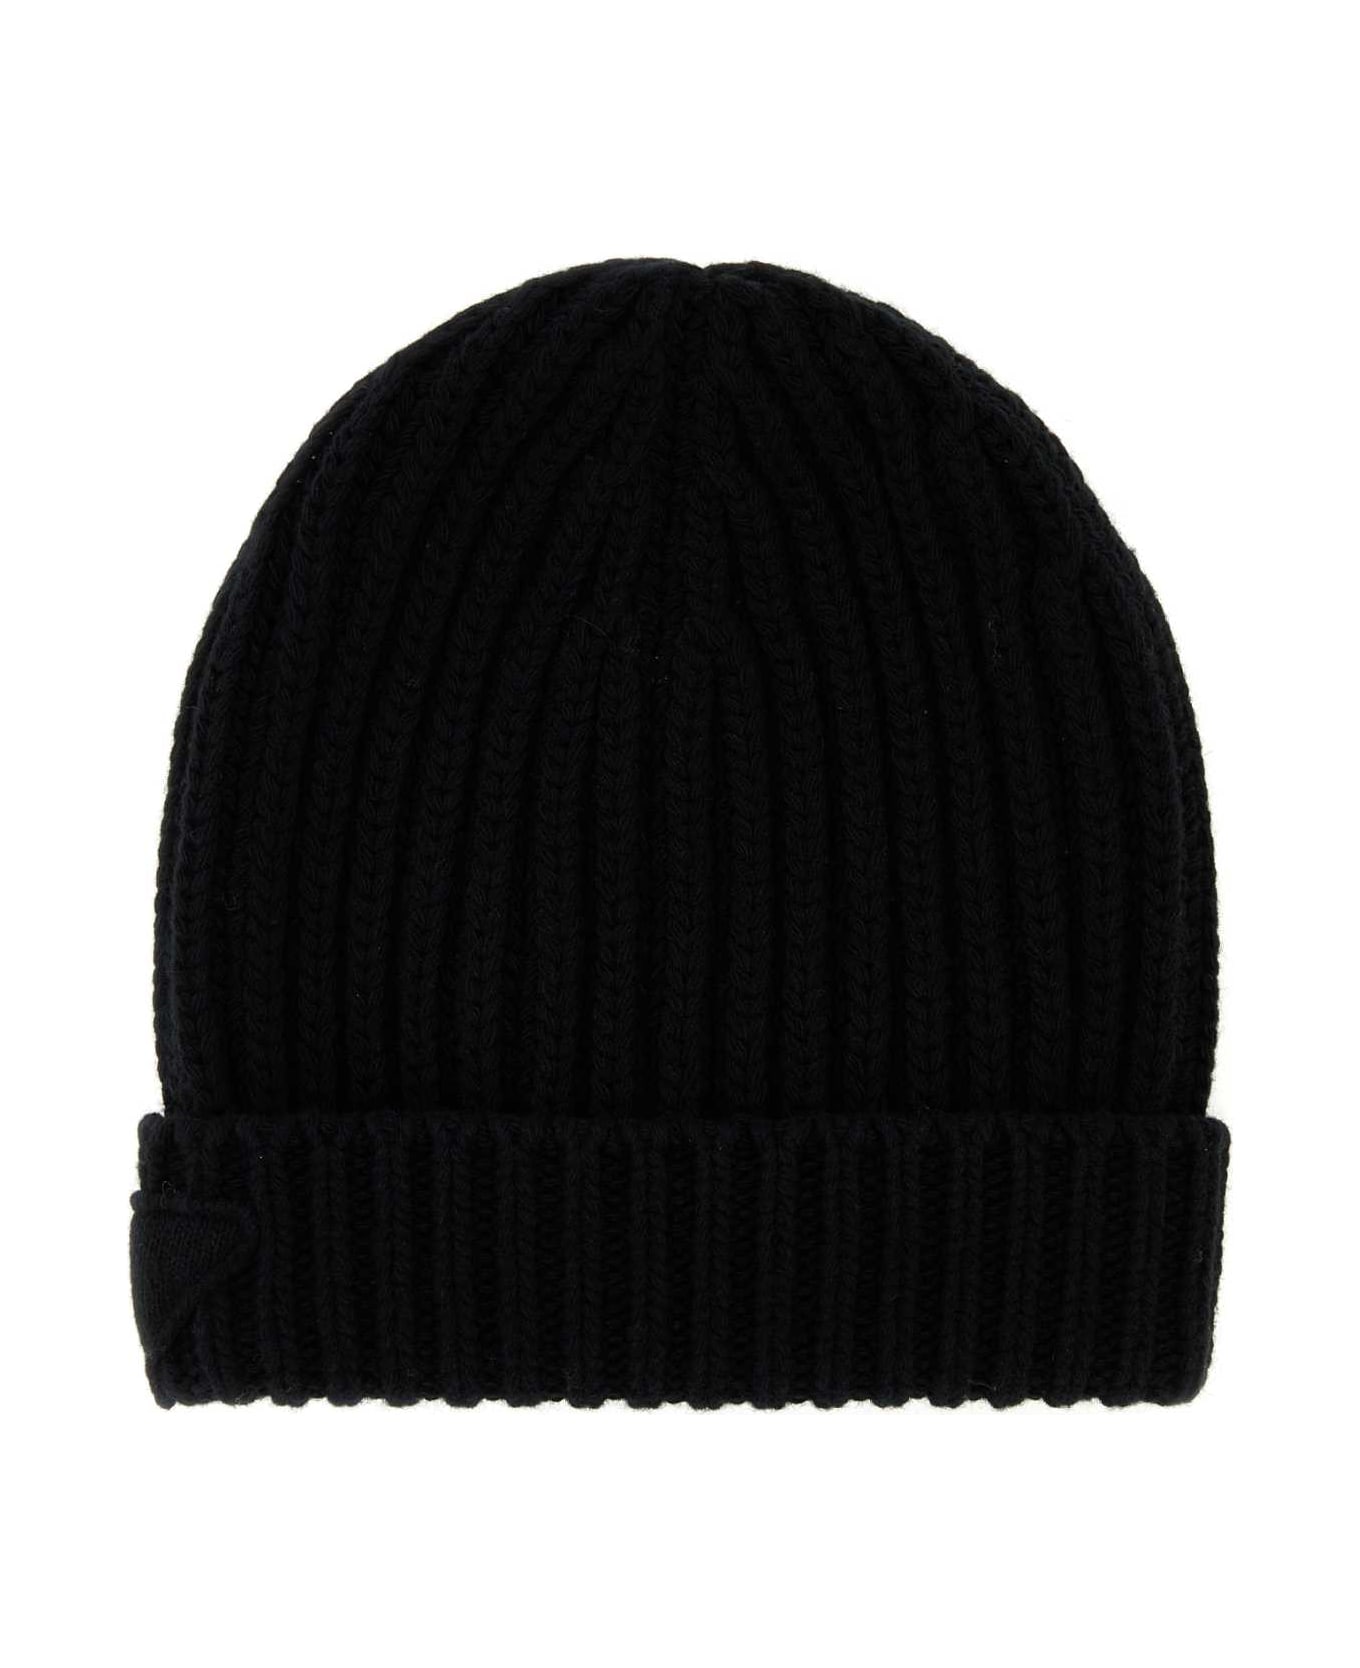 Prada Black Wool Blend Beanie Hat - F0002